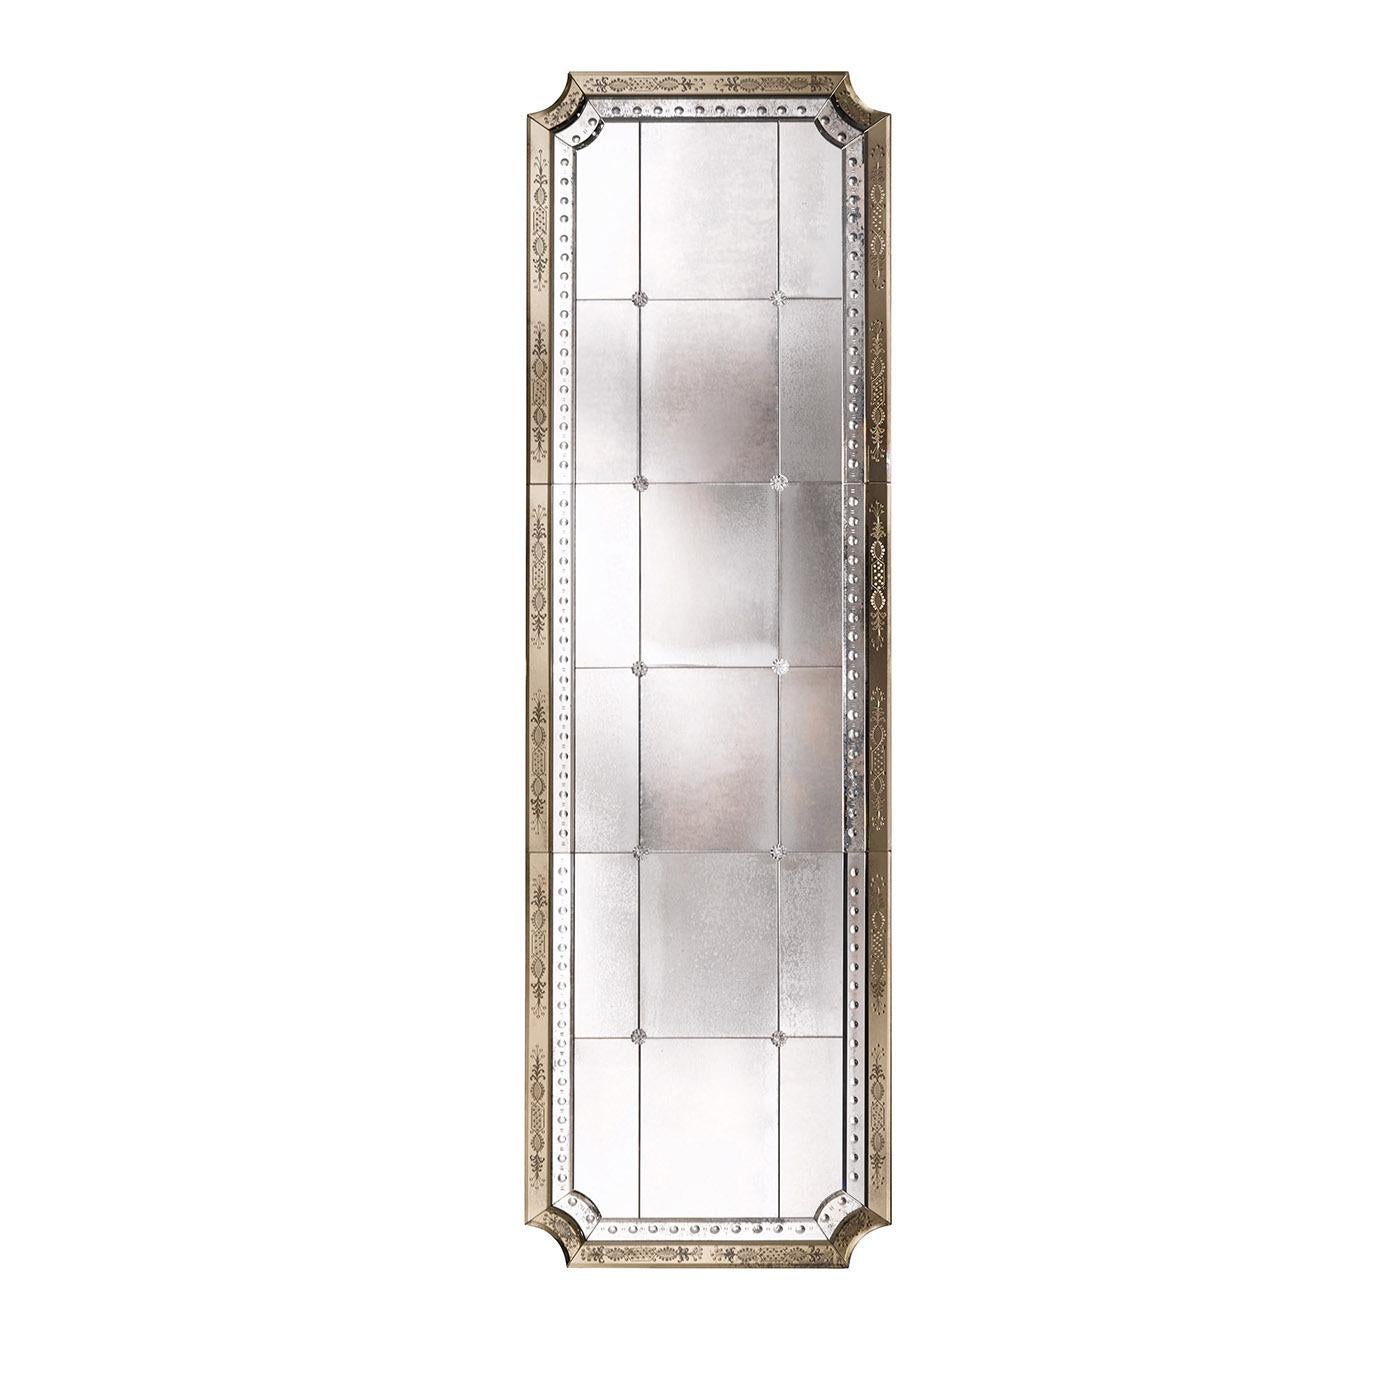 Faisant partie de la collection Louix XIV, ce miroir élaboré s'inspire du style français du XVIIIe siècle. La structure est réalisée en bois de sapin avec une finition de couleur noyer foncé et des coins arrondis. La partie centrale est en verre